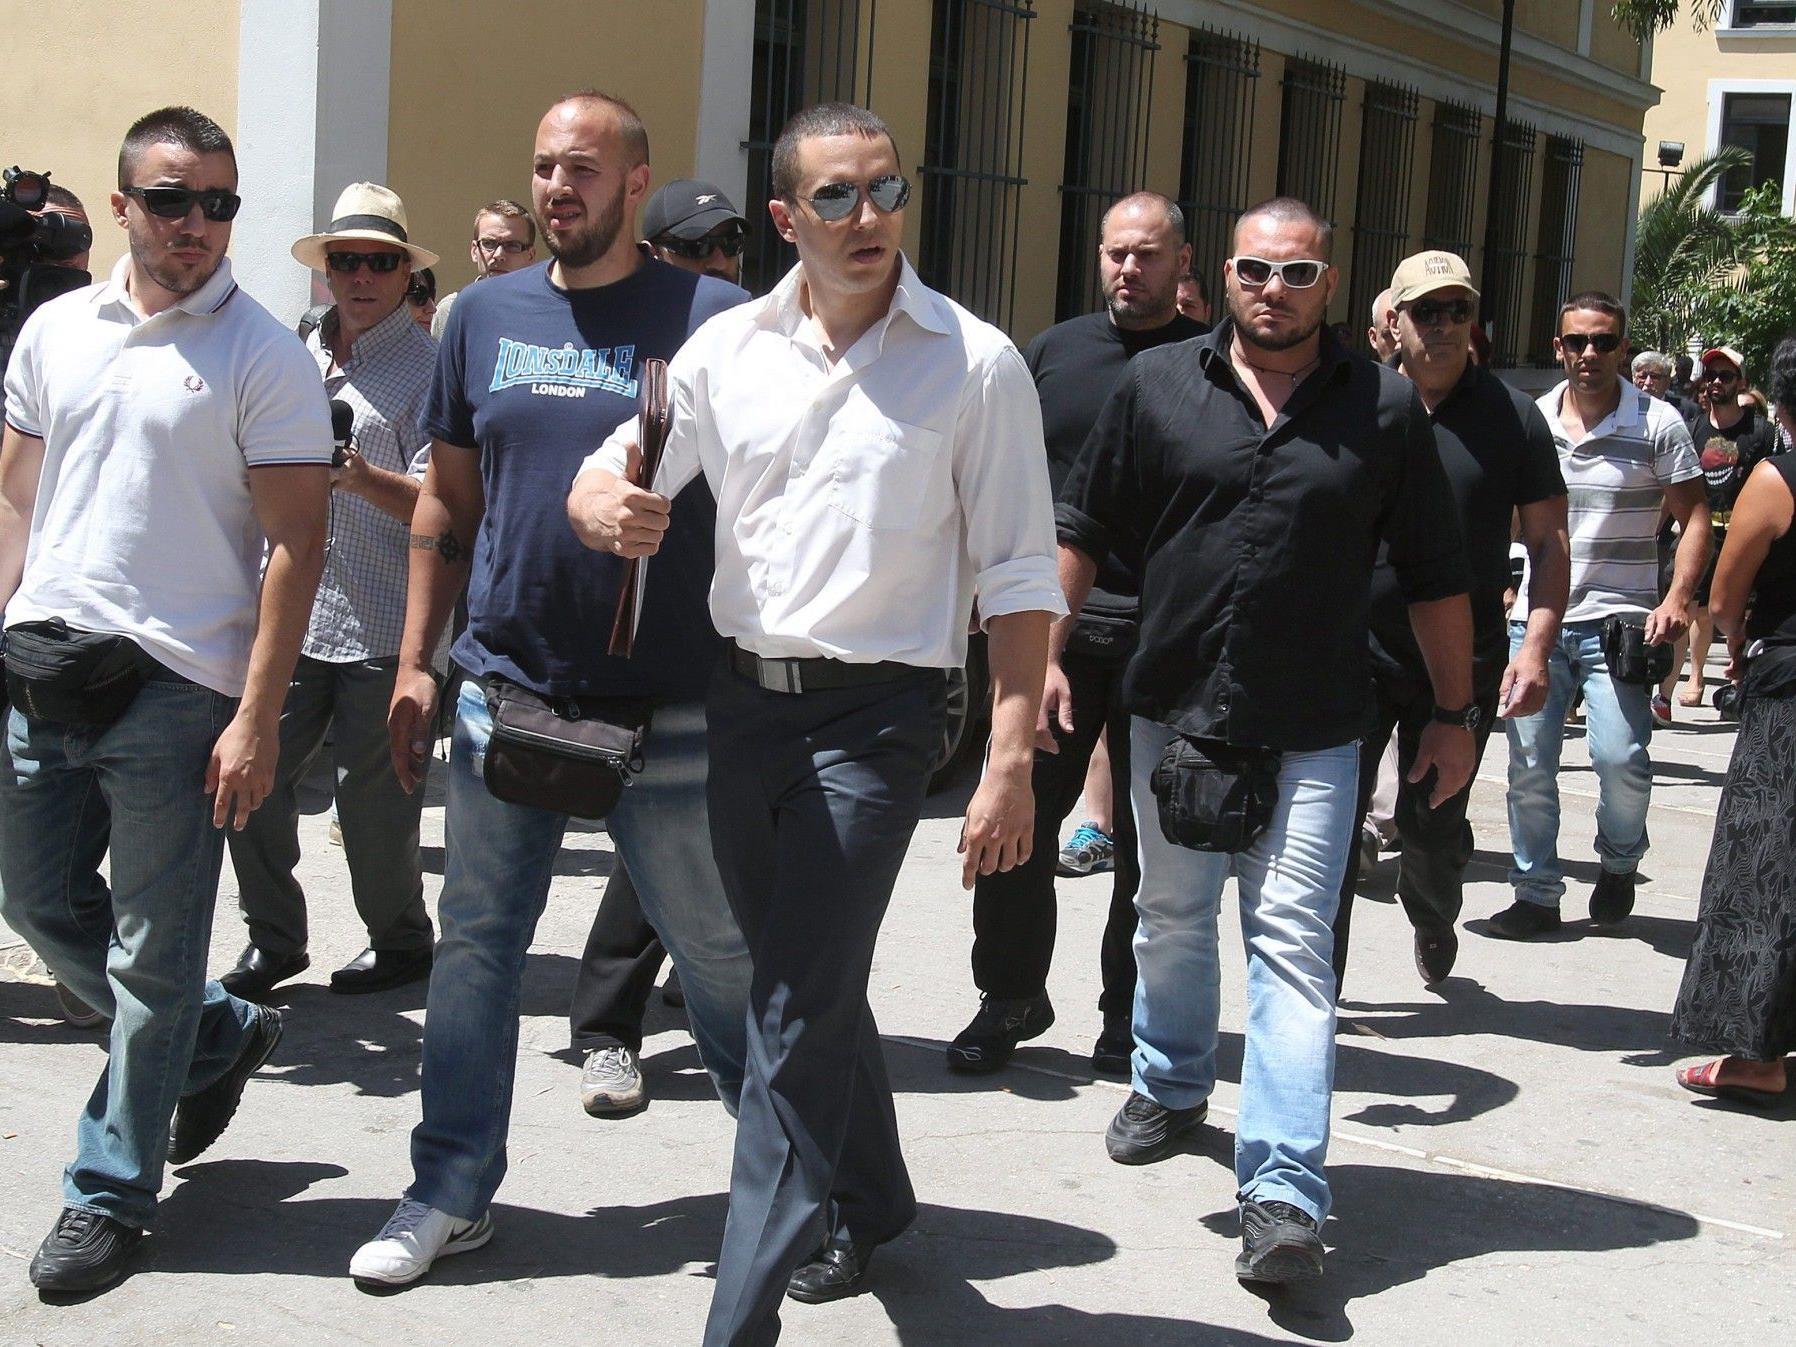 Mitglieder der Rechtsradikalen griechischen Partei "Goldene Morgenröte".